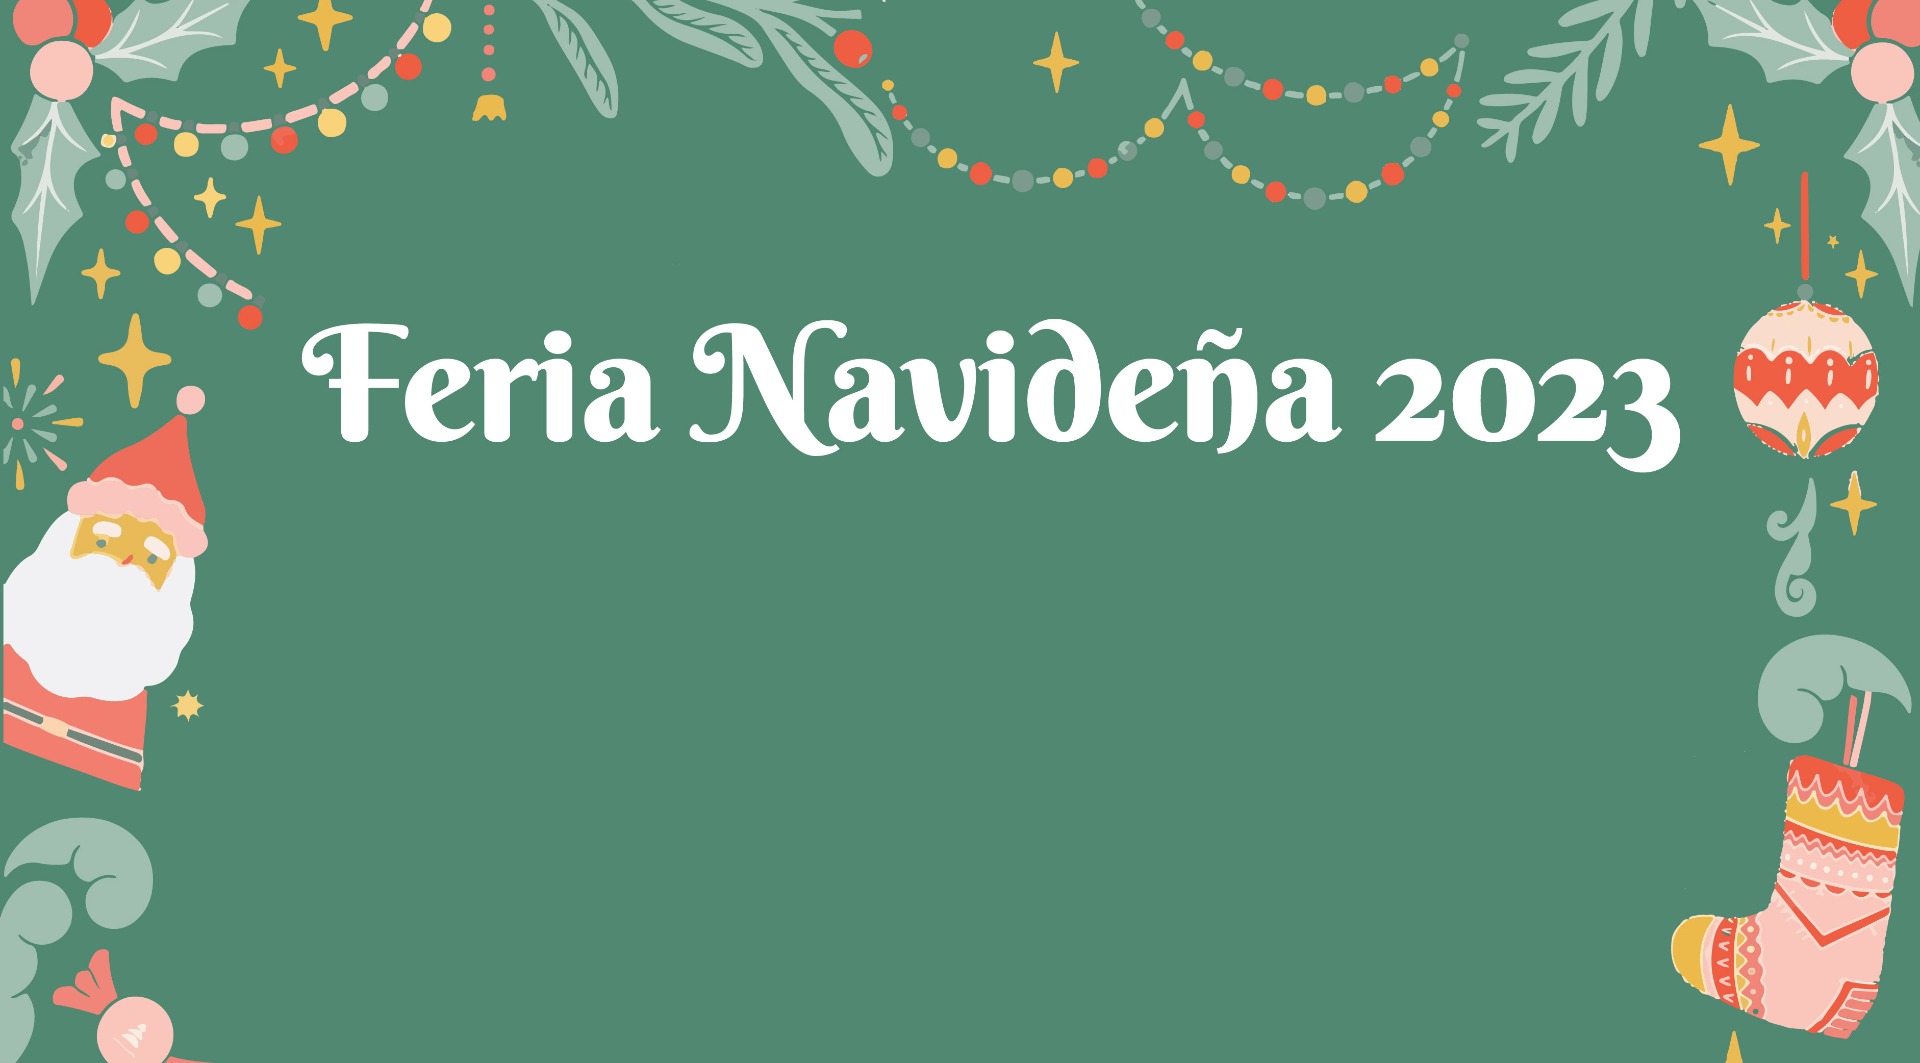 Feria Navideña 2023